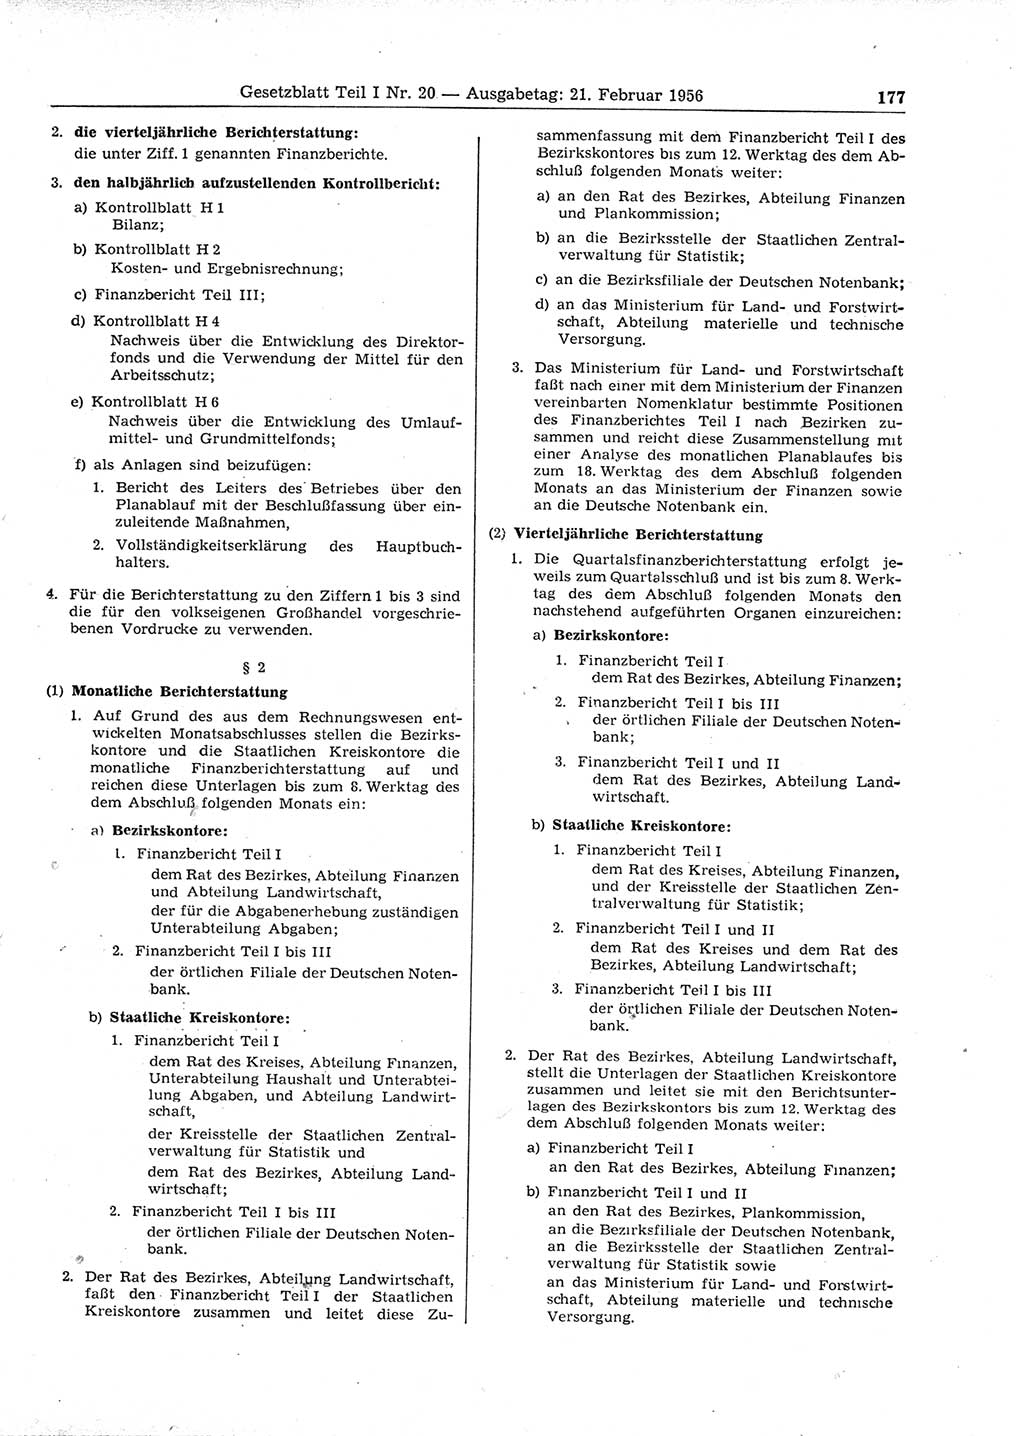 Gesetzblatt (GBl.) der Deutschen Demokratischen Republik (DDR) Teil Ⅰ 1956, Seite 177 (GBl. DDR Ⅰ 1956, S. 177)